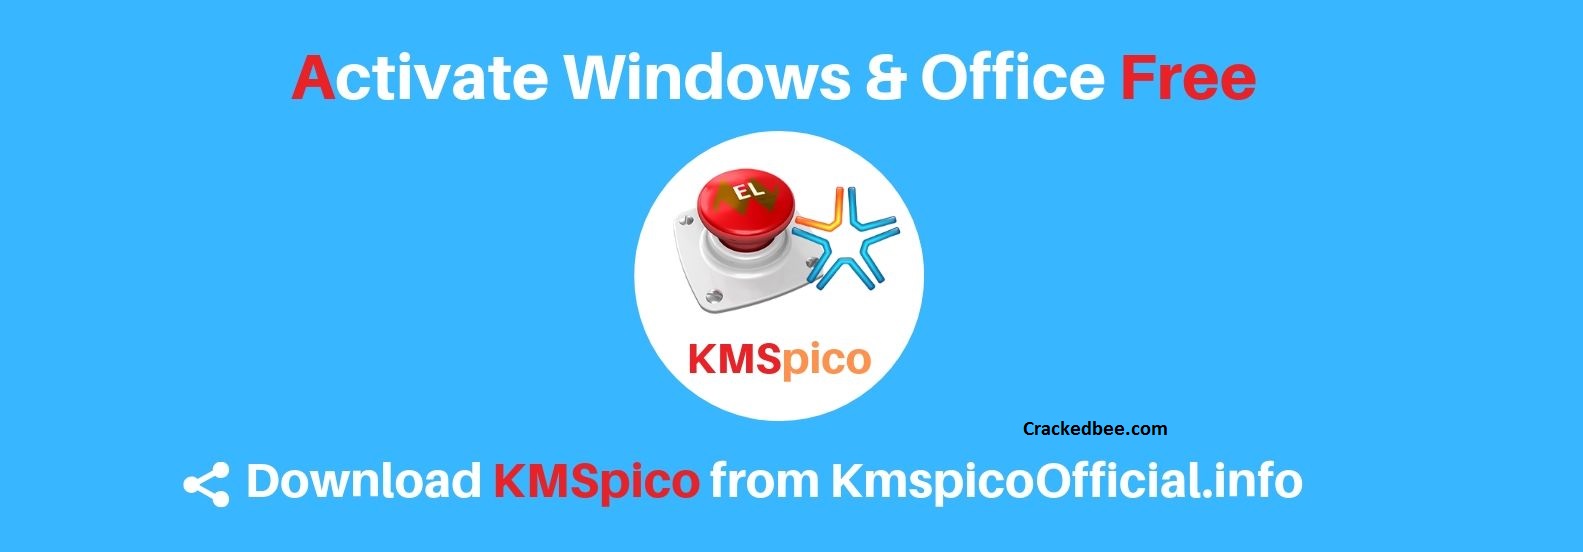 activator kmspico download kmspico windows activator tool